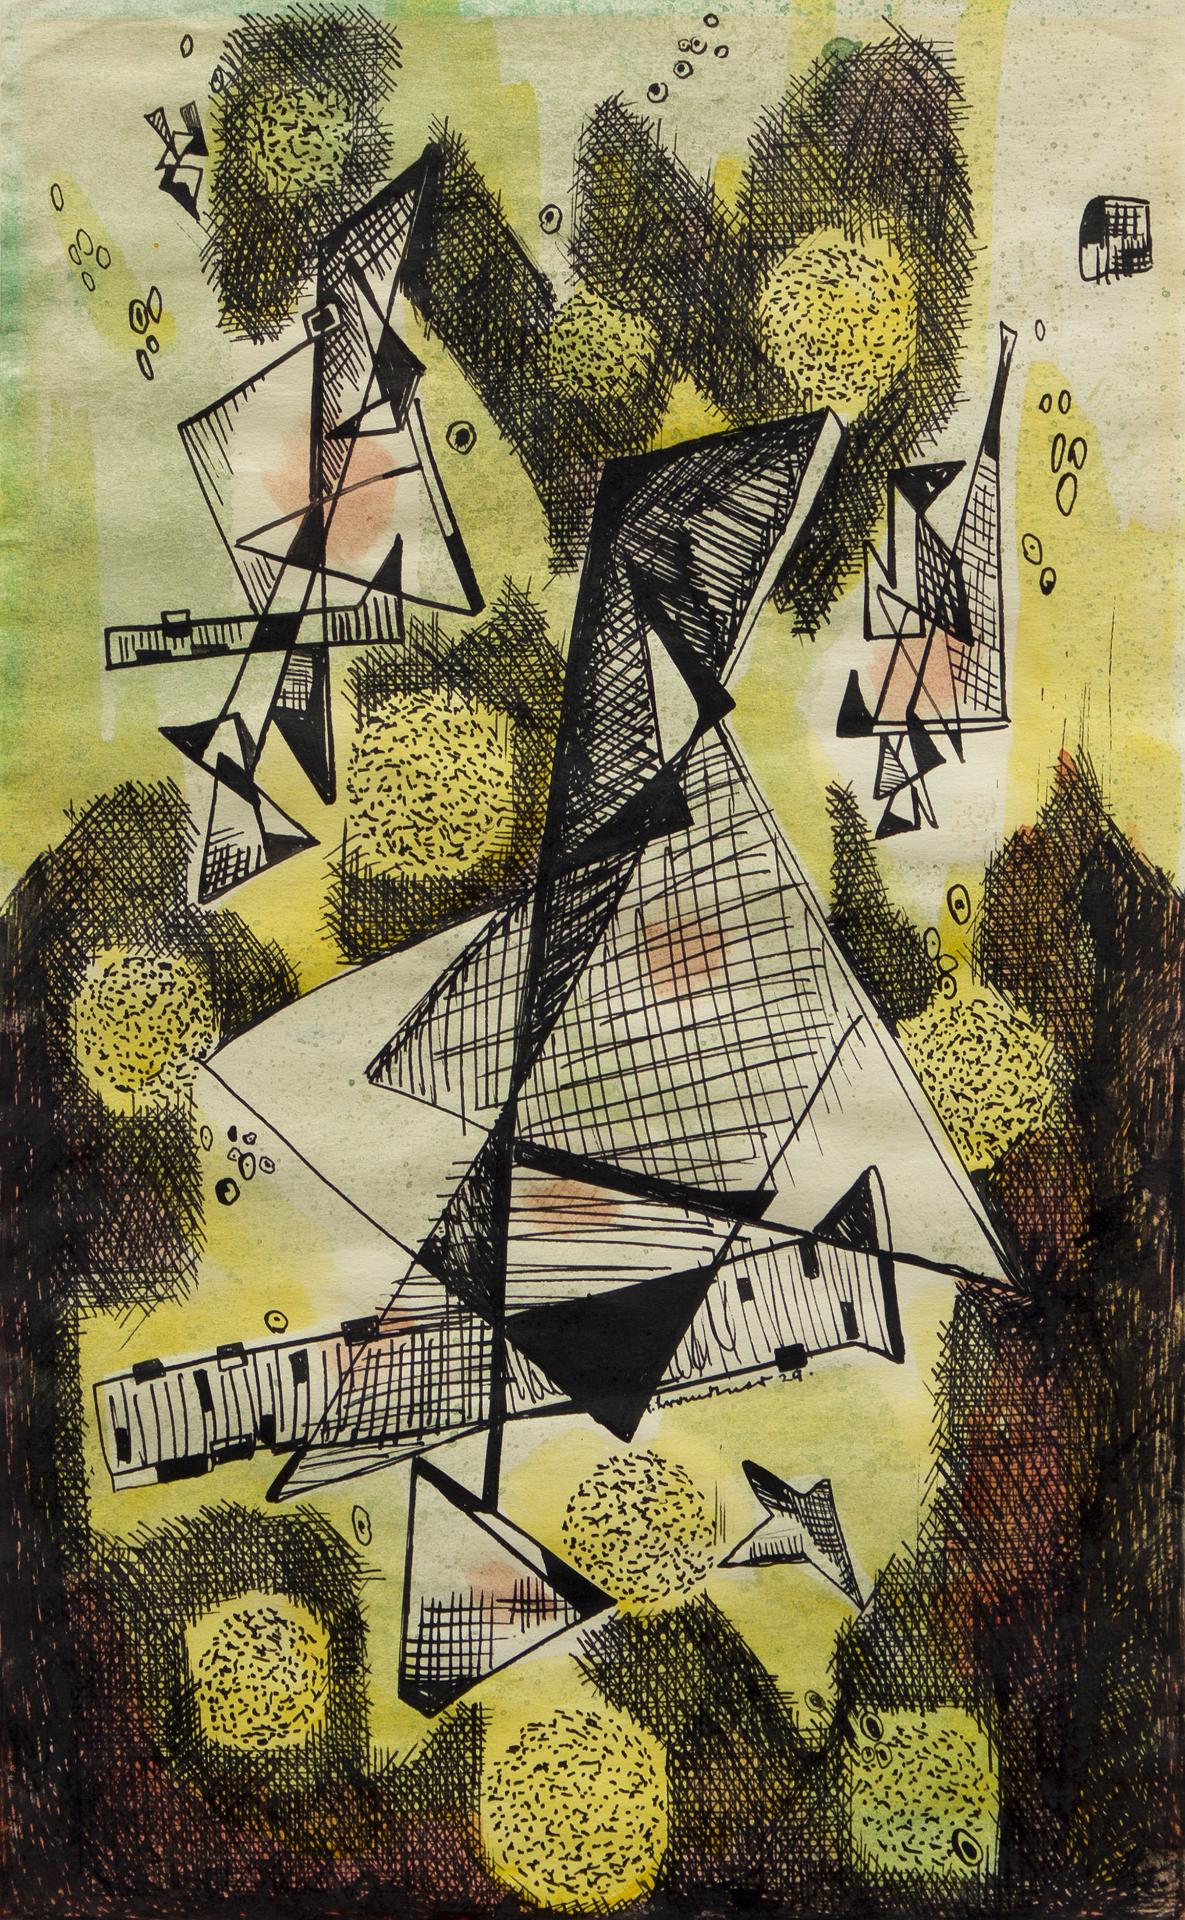 Fritz Brandtner (1896-1969) - Abstract Designe, 1929